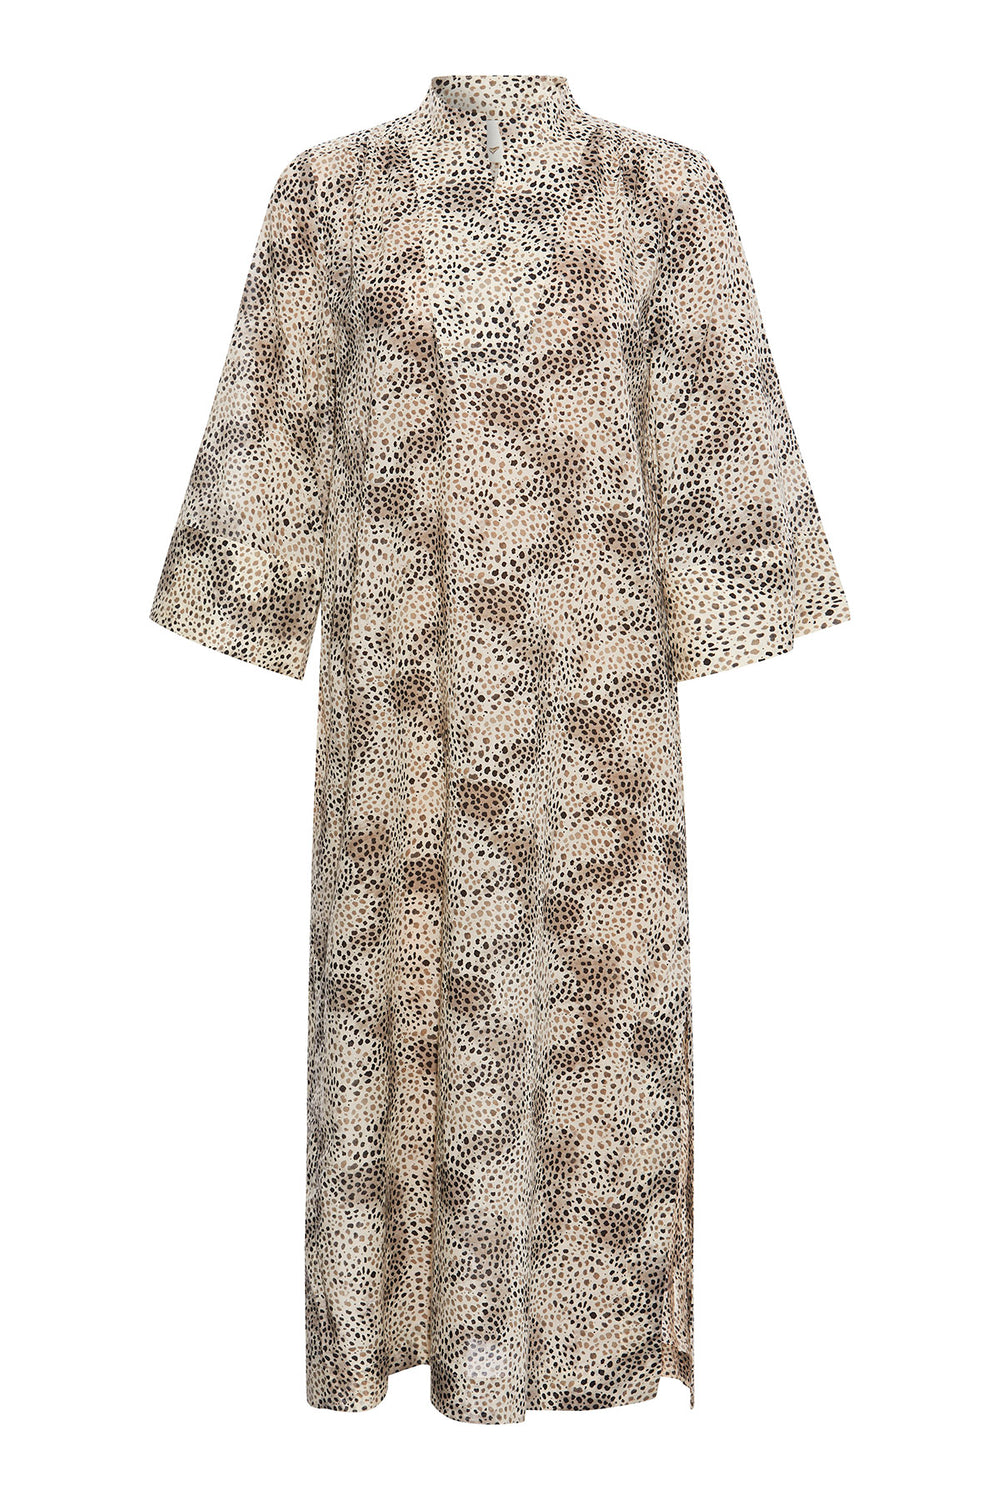 Heartmade Hivan dress HM DRESSES 905 Brown leopard